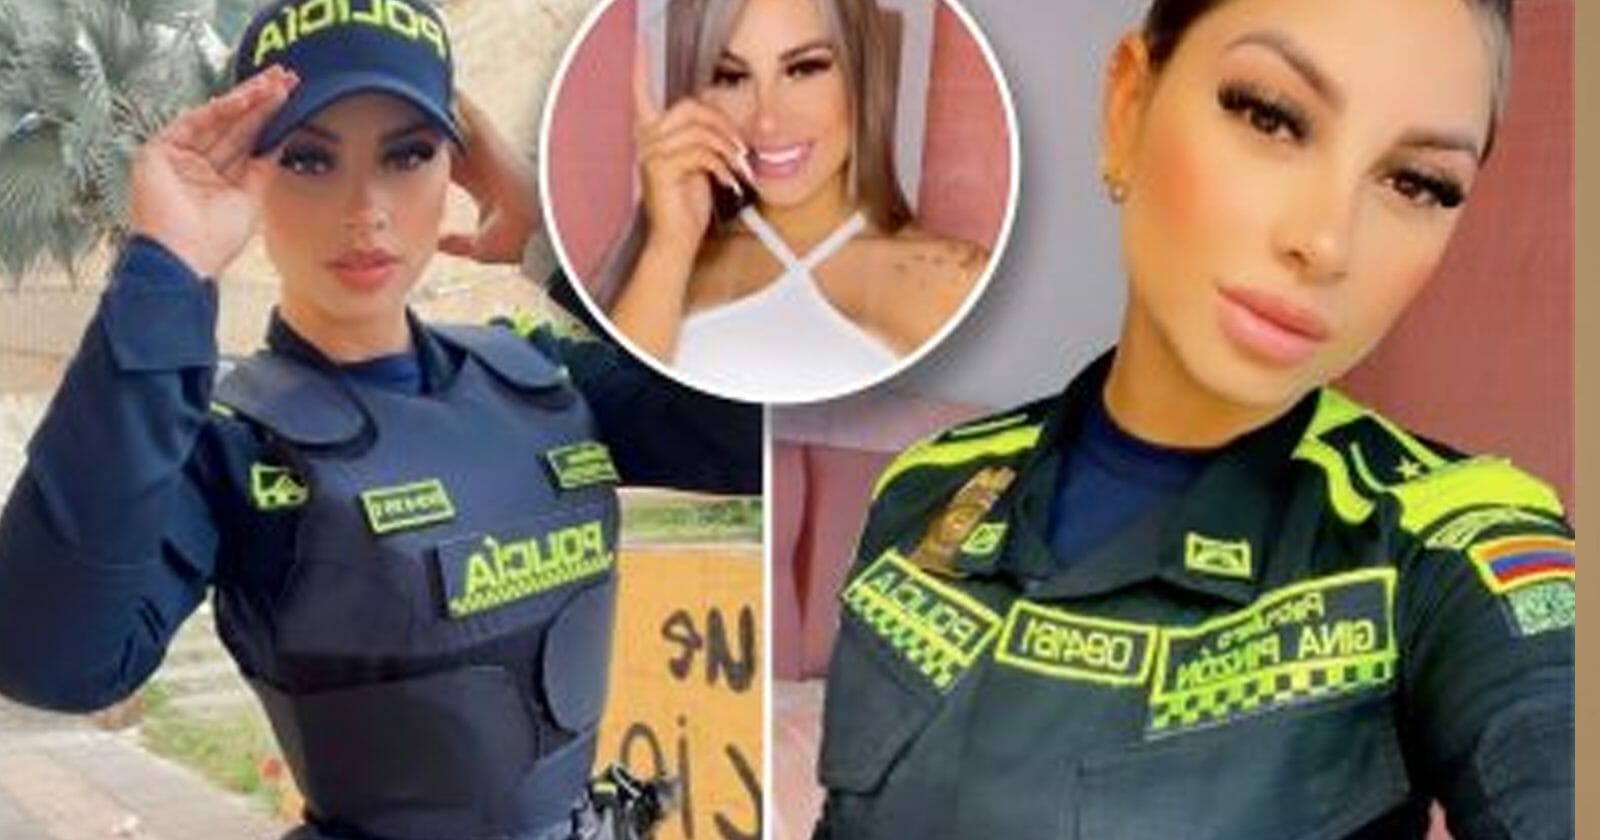 شرطية مهووسة بـ"البكيني" تثير جنون الرجال وتعليقاتهم الجنسية بهذا الفيديو! watanserb.com